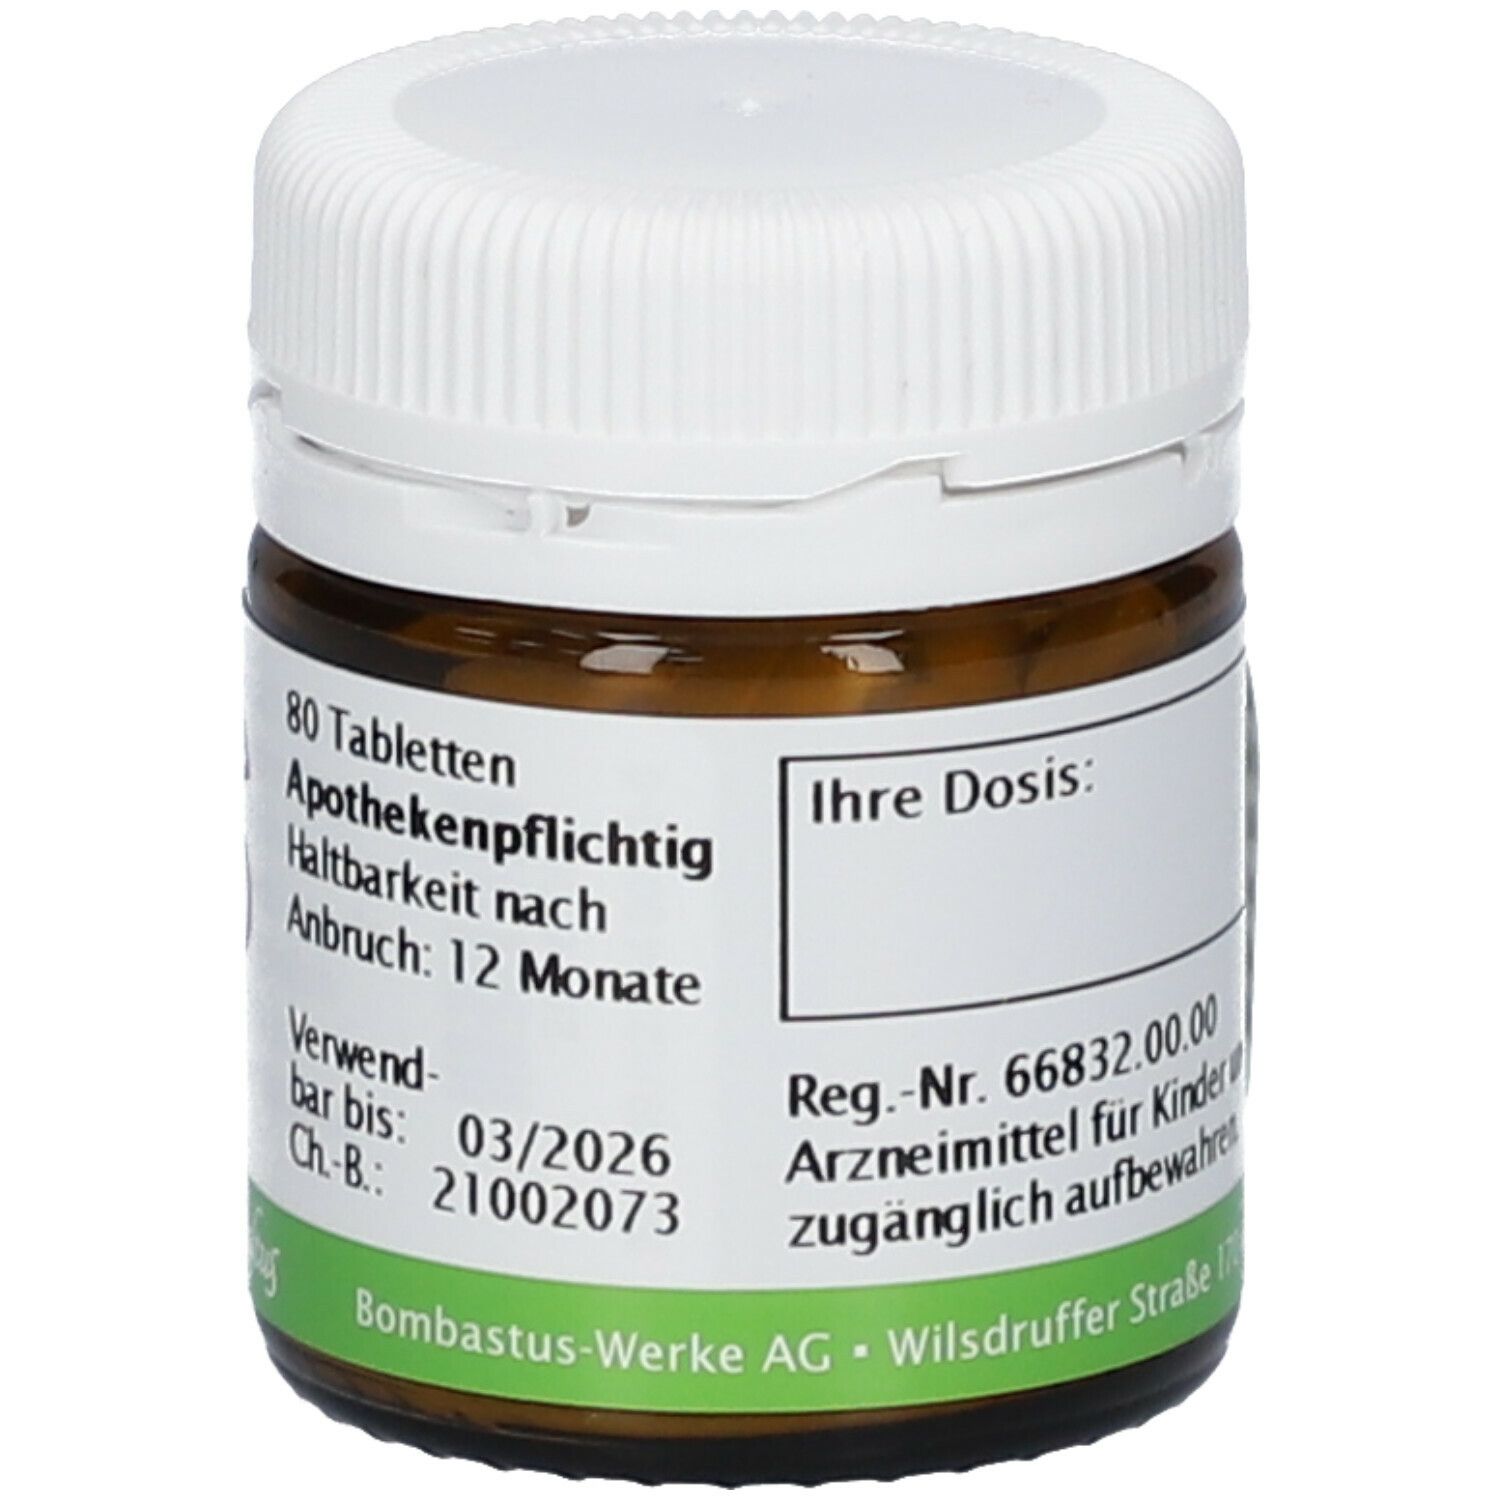 Bombastus Biochemie 1 Calcium fluoratum D 6 Tabletten